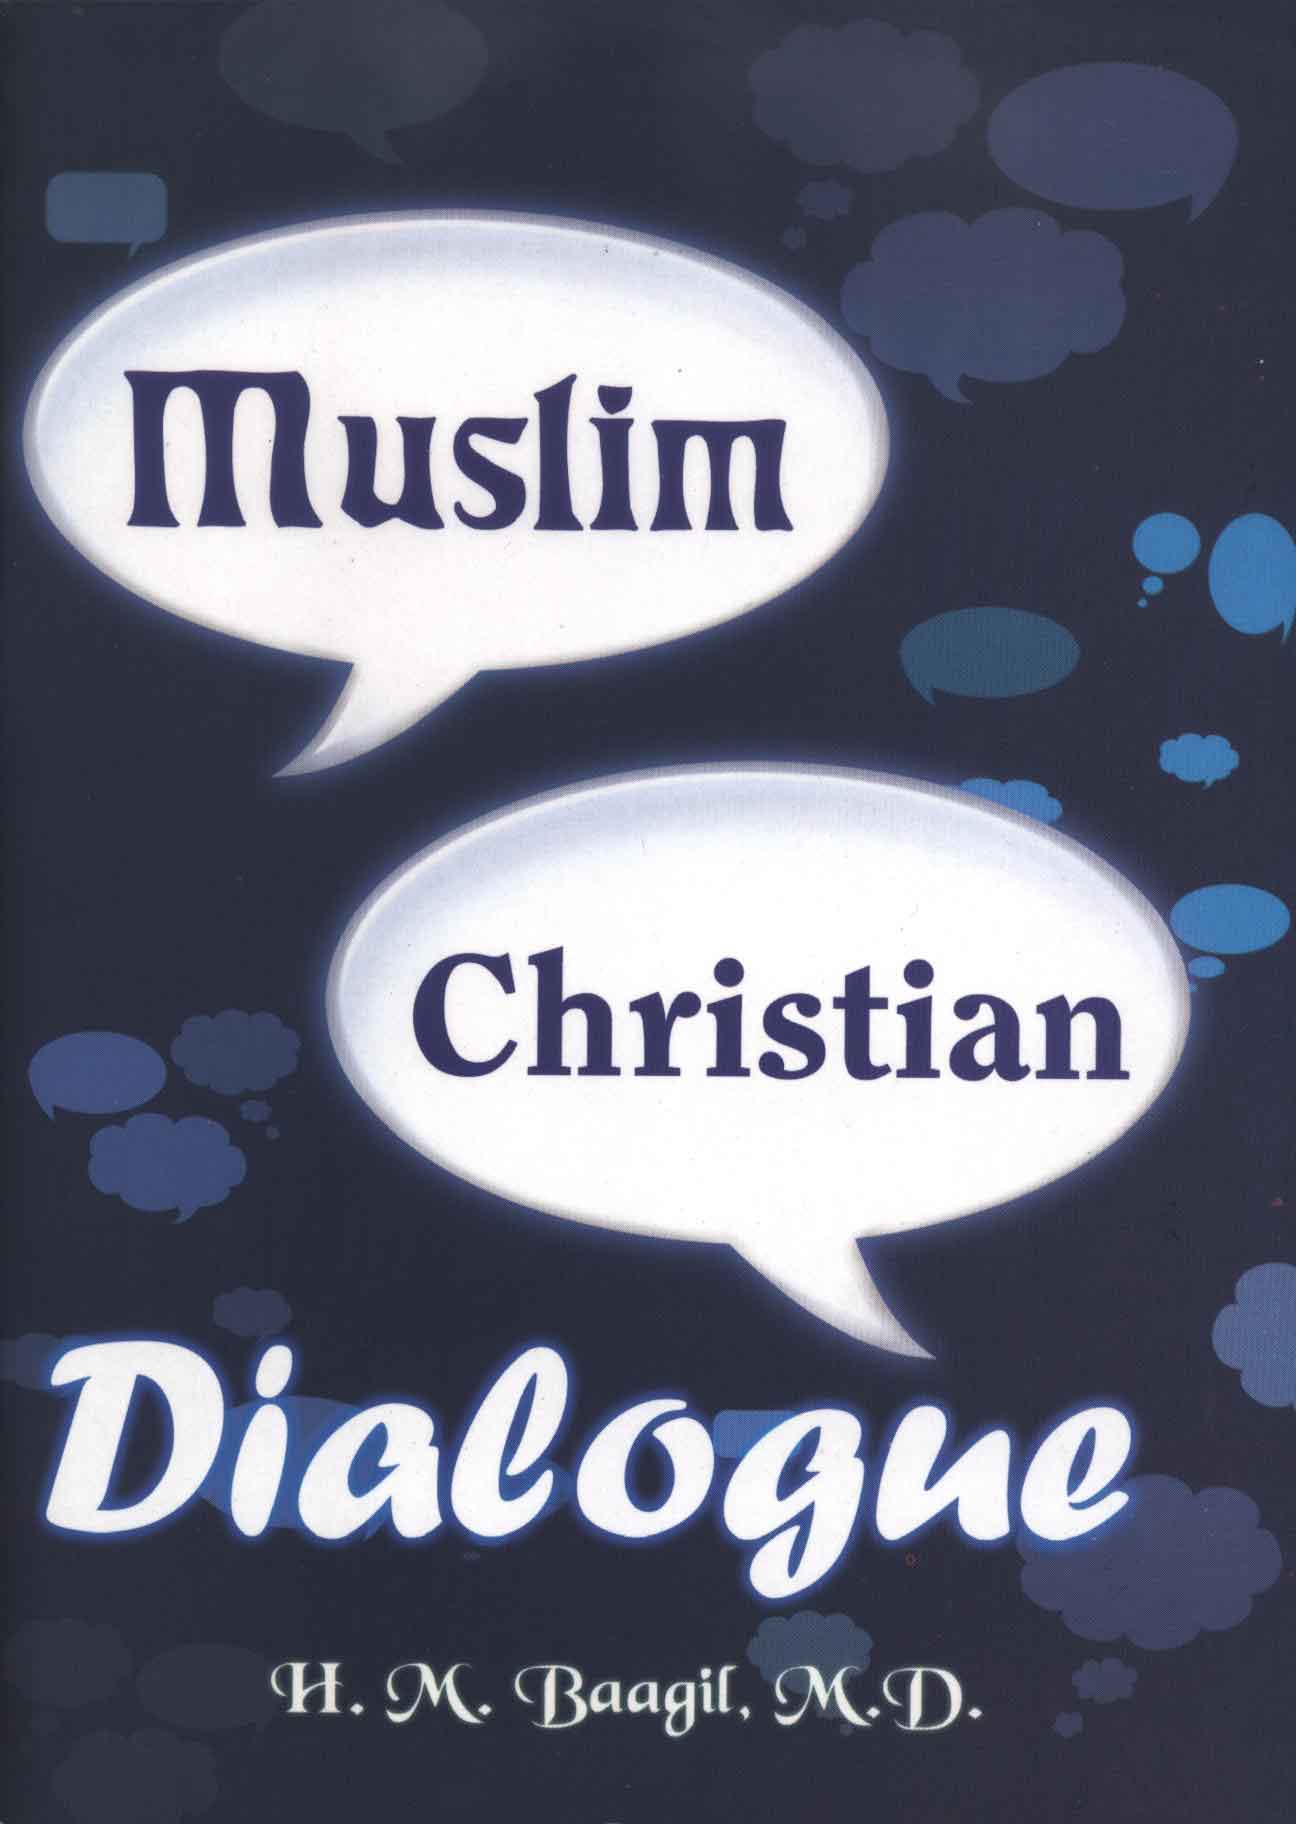 Ang Talakayan ng Kristiyano at Muslim